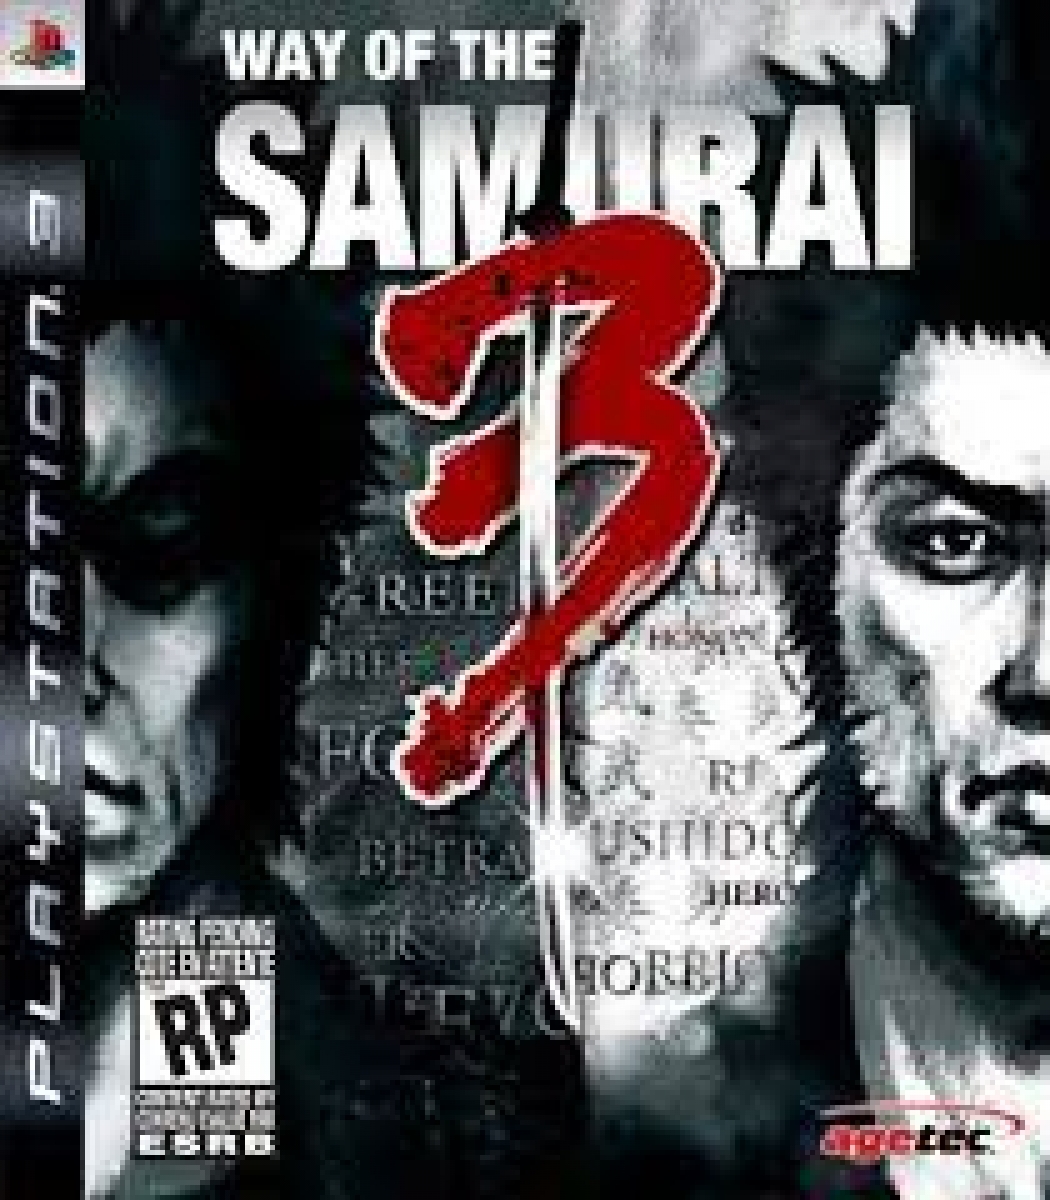 Way of the Samurai 3 PS3